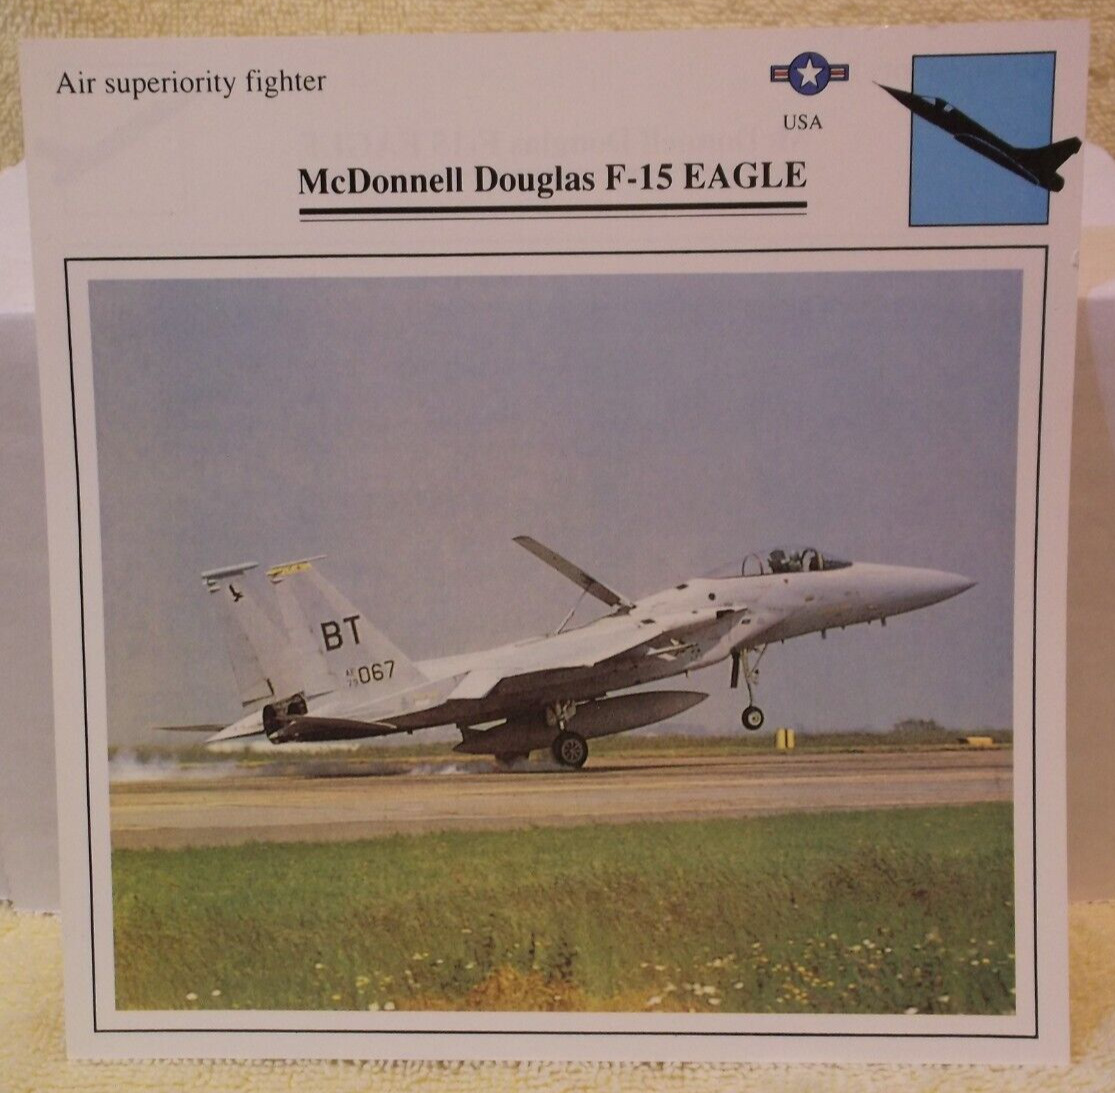 Collectible Fighter Plane Fact Cards, Edito-Service SA, 1988-90 (3 card set)